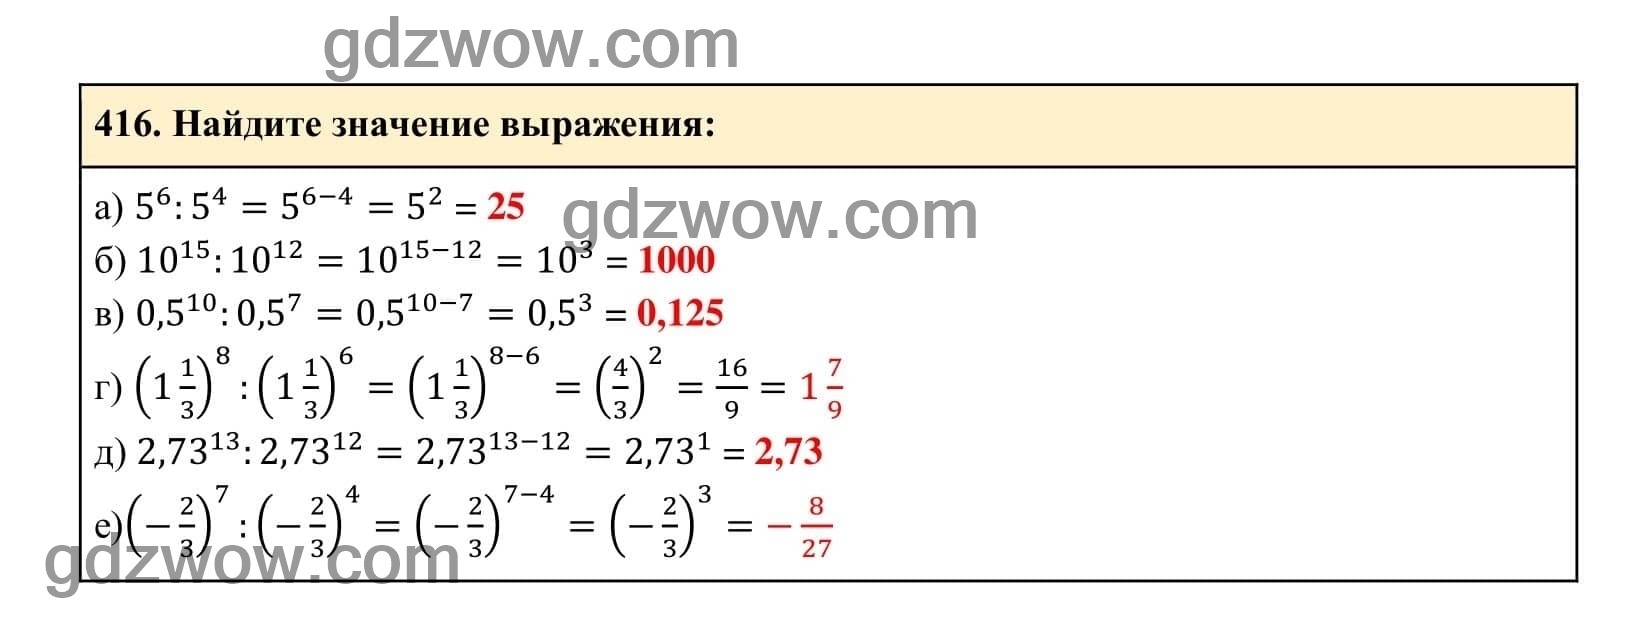 Упражнение 416 - ГДЗ по Алгебре 7 класс Учебник Макарычев (решебник) - GDZwow